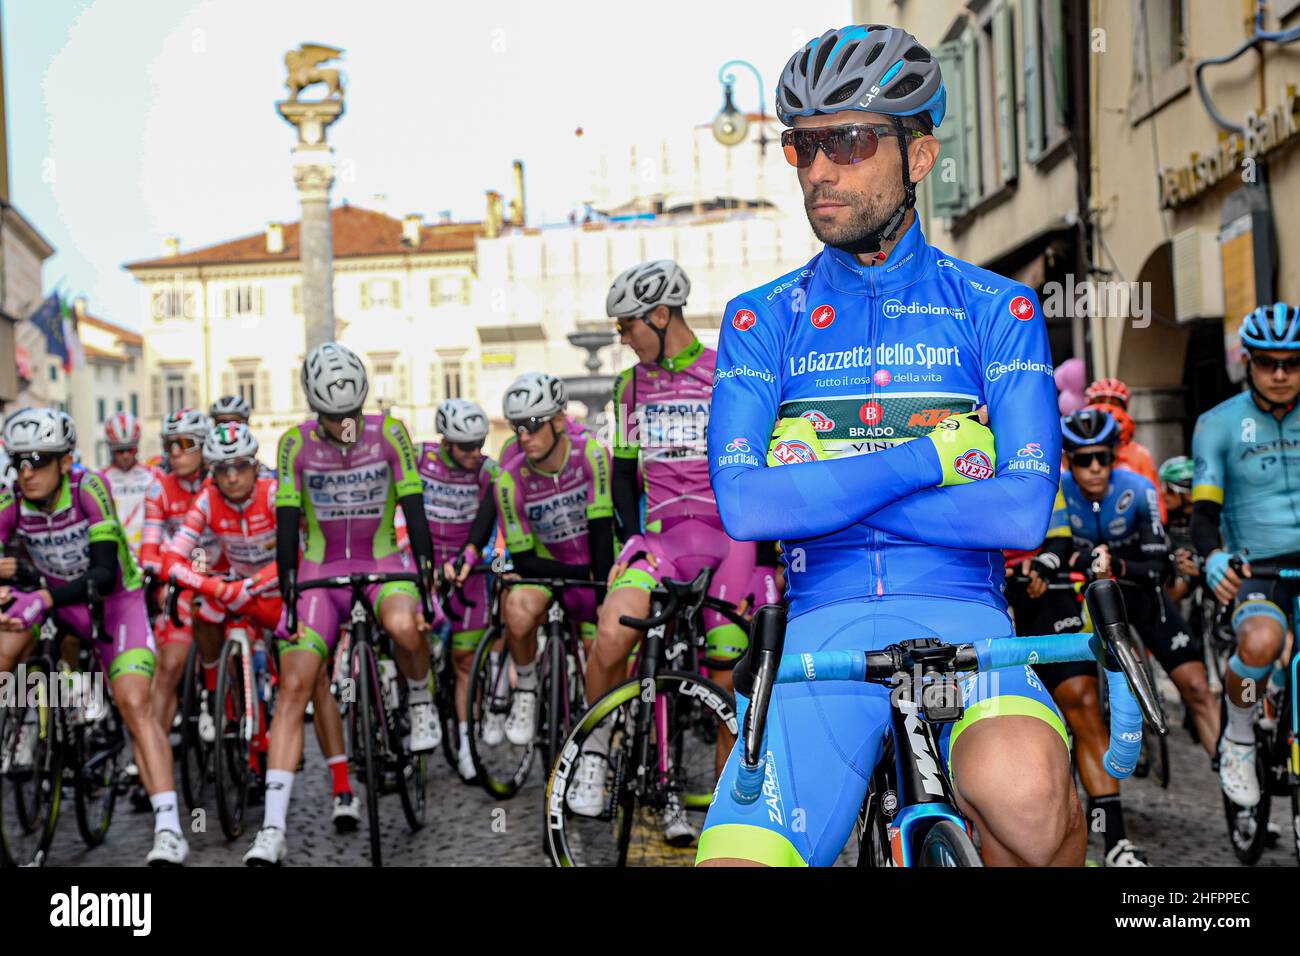 Gian Mattia D'Alberto/LaPresse October 20, 2020 Italy Sport Cycling Giro d'Italia 2020 - 103th edition - Stage 16 - From Udine to San Daniele del Friuli In the pic: Giovanni Visconti (Vini Zabu' - Brado - KTM) Stock Photo